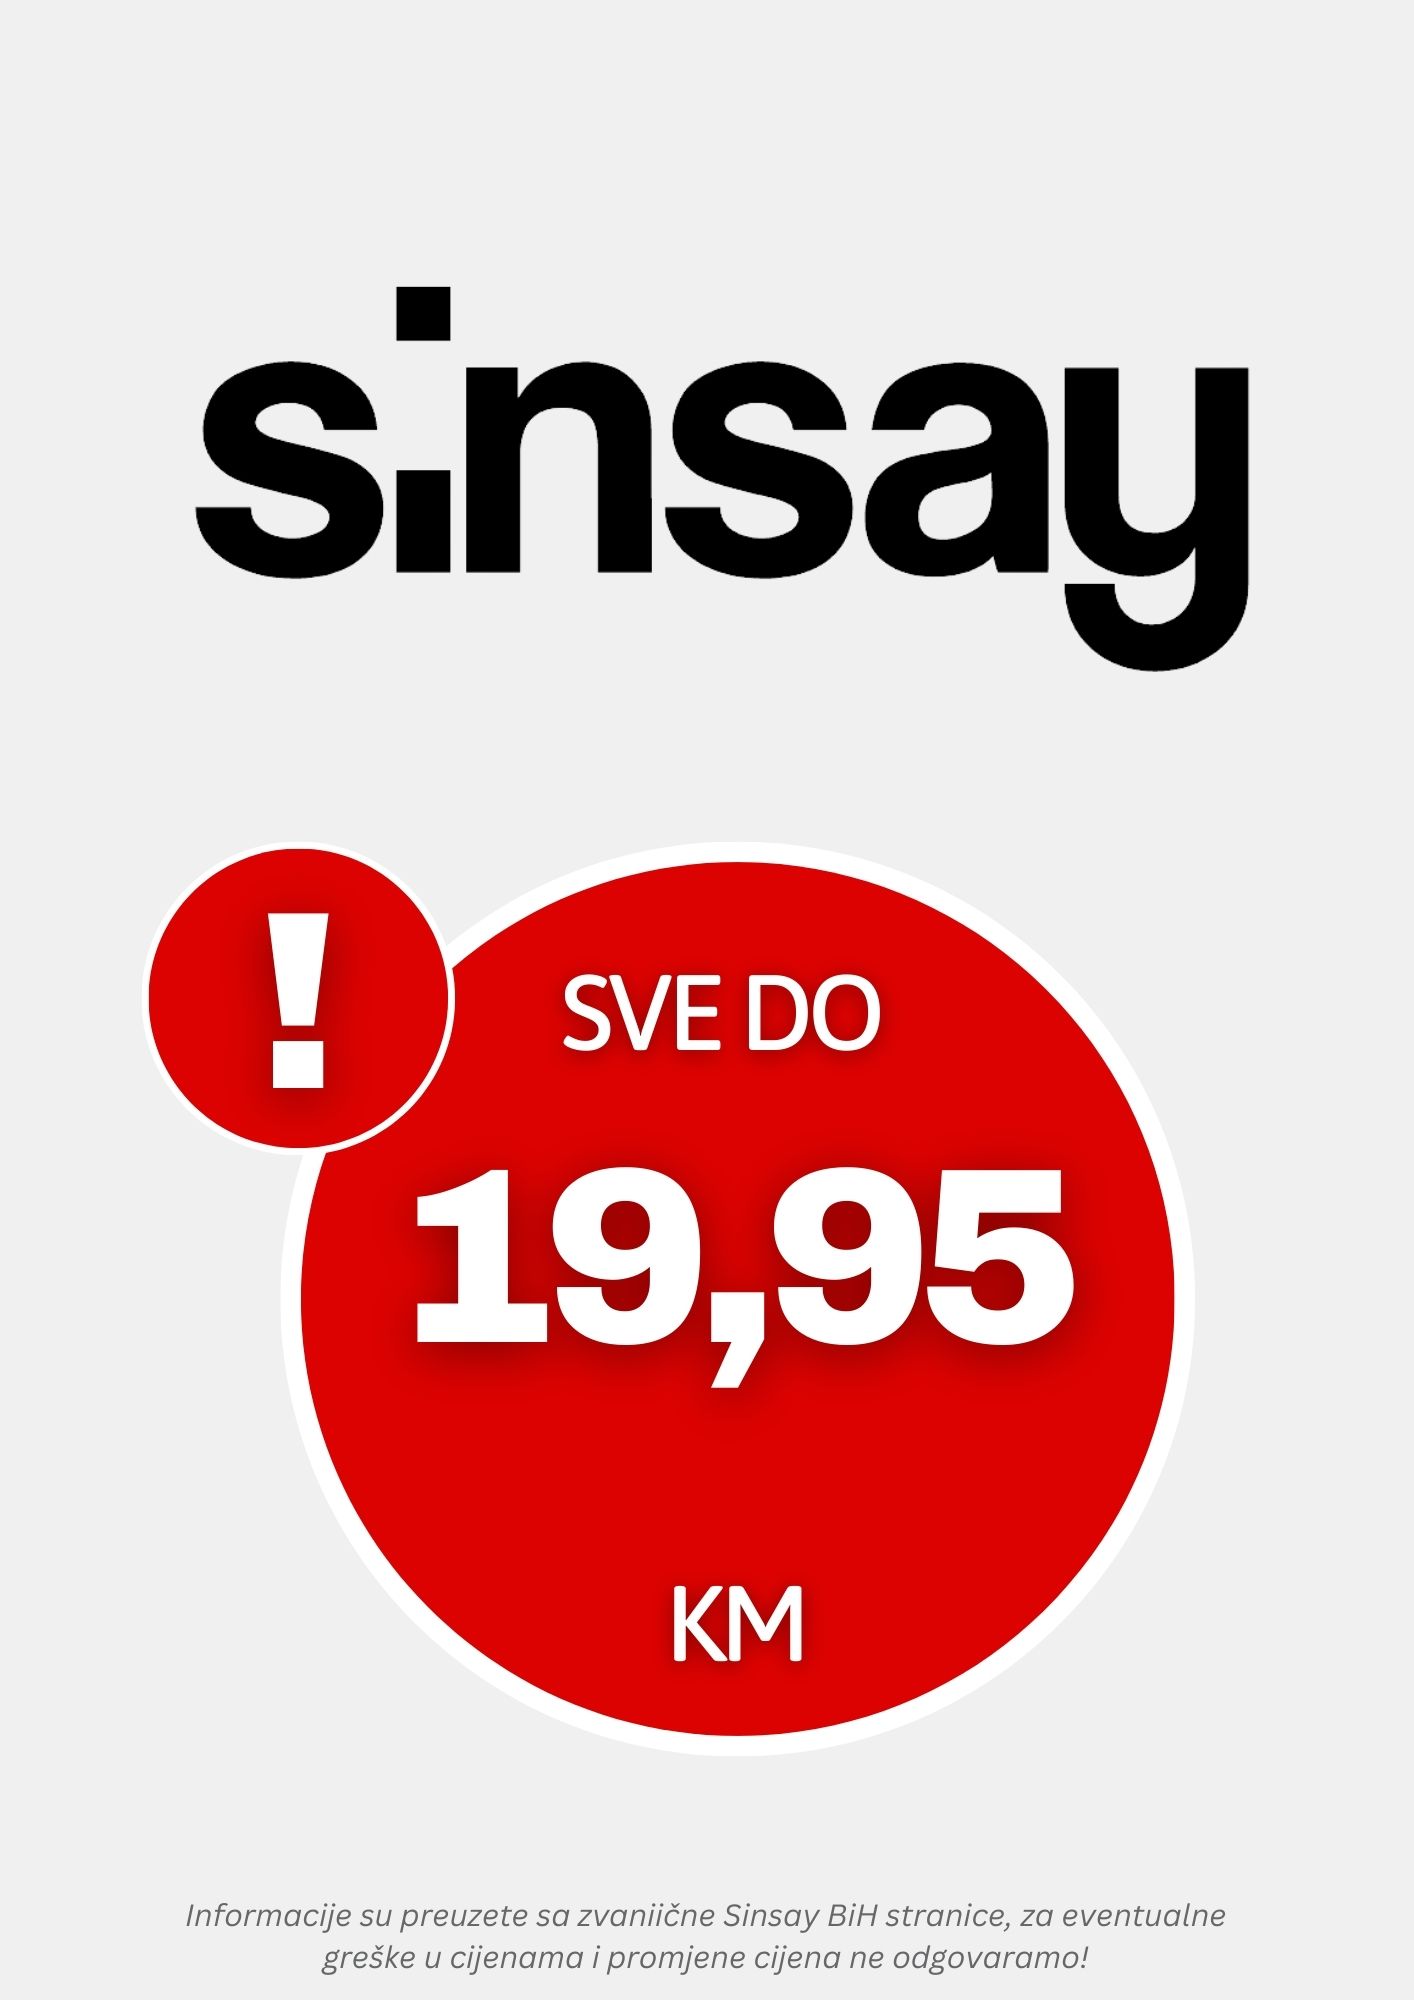 Sinsay SVE DO 19,95 KM